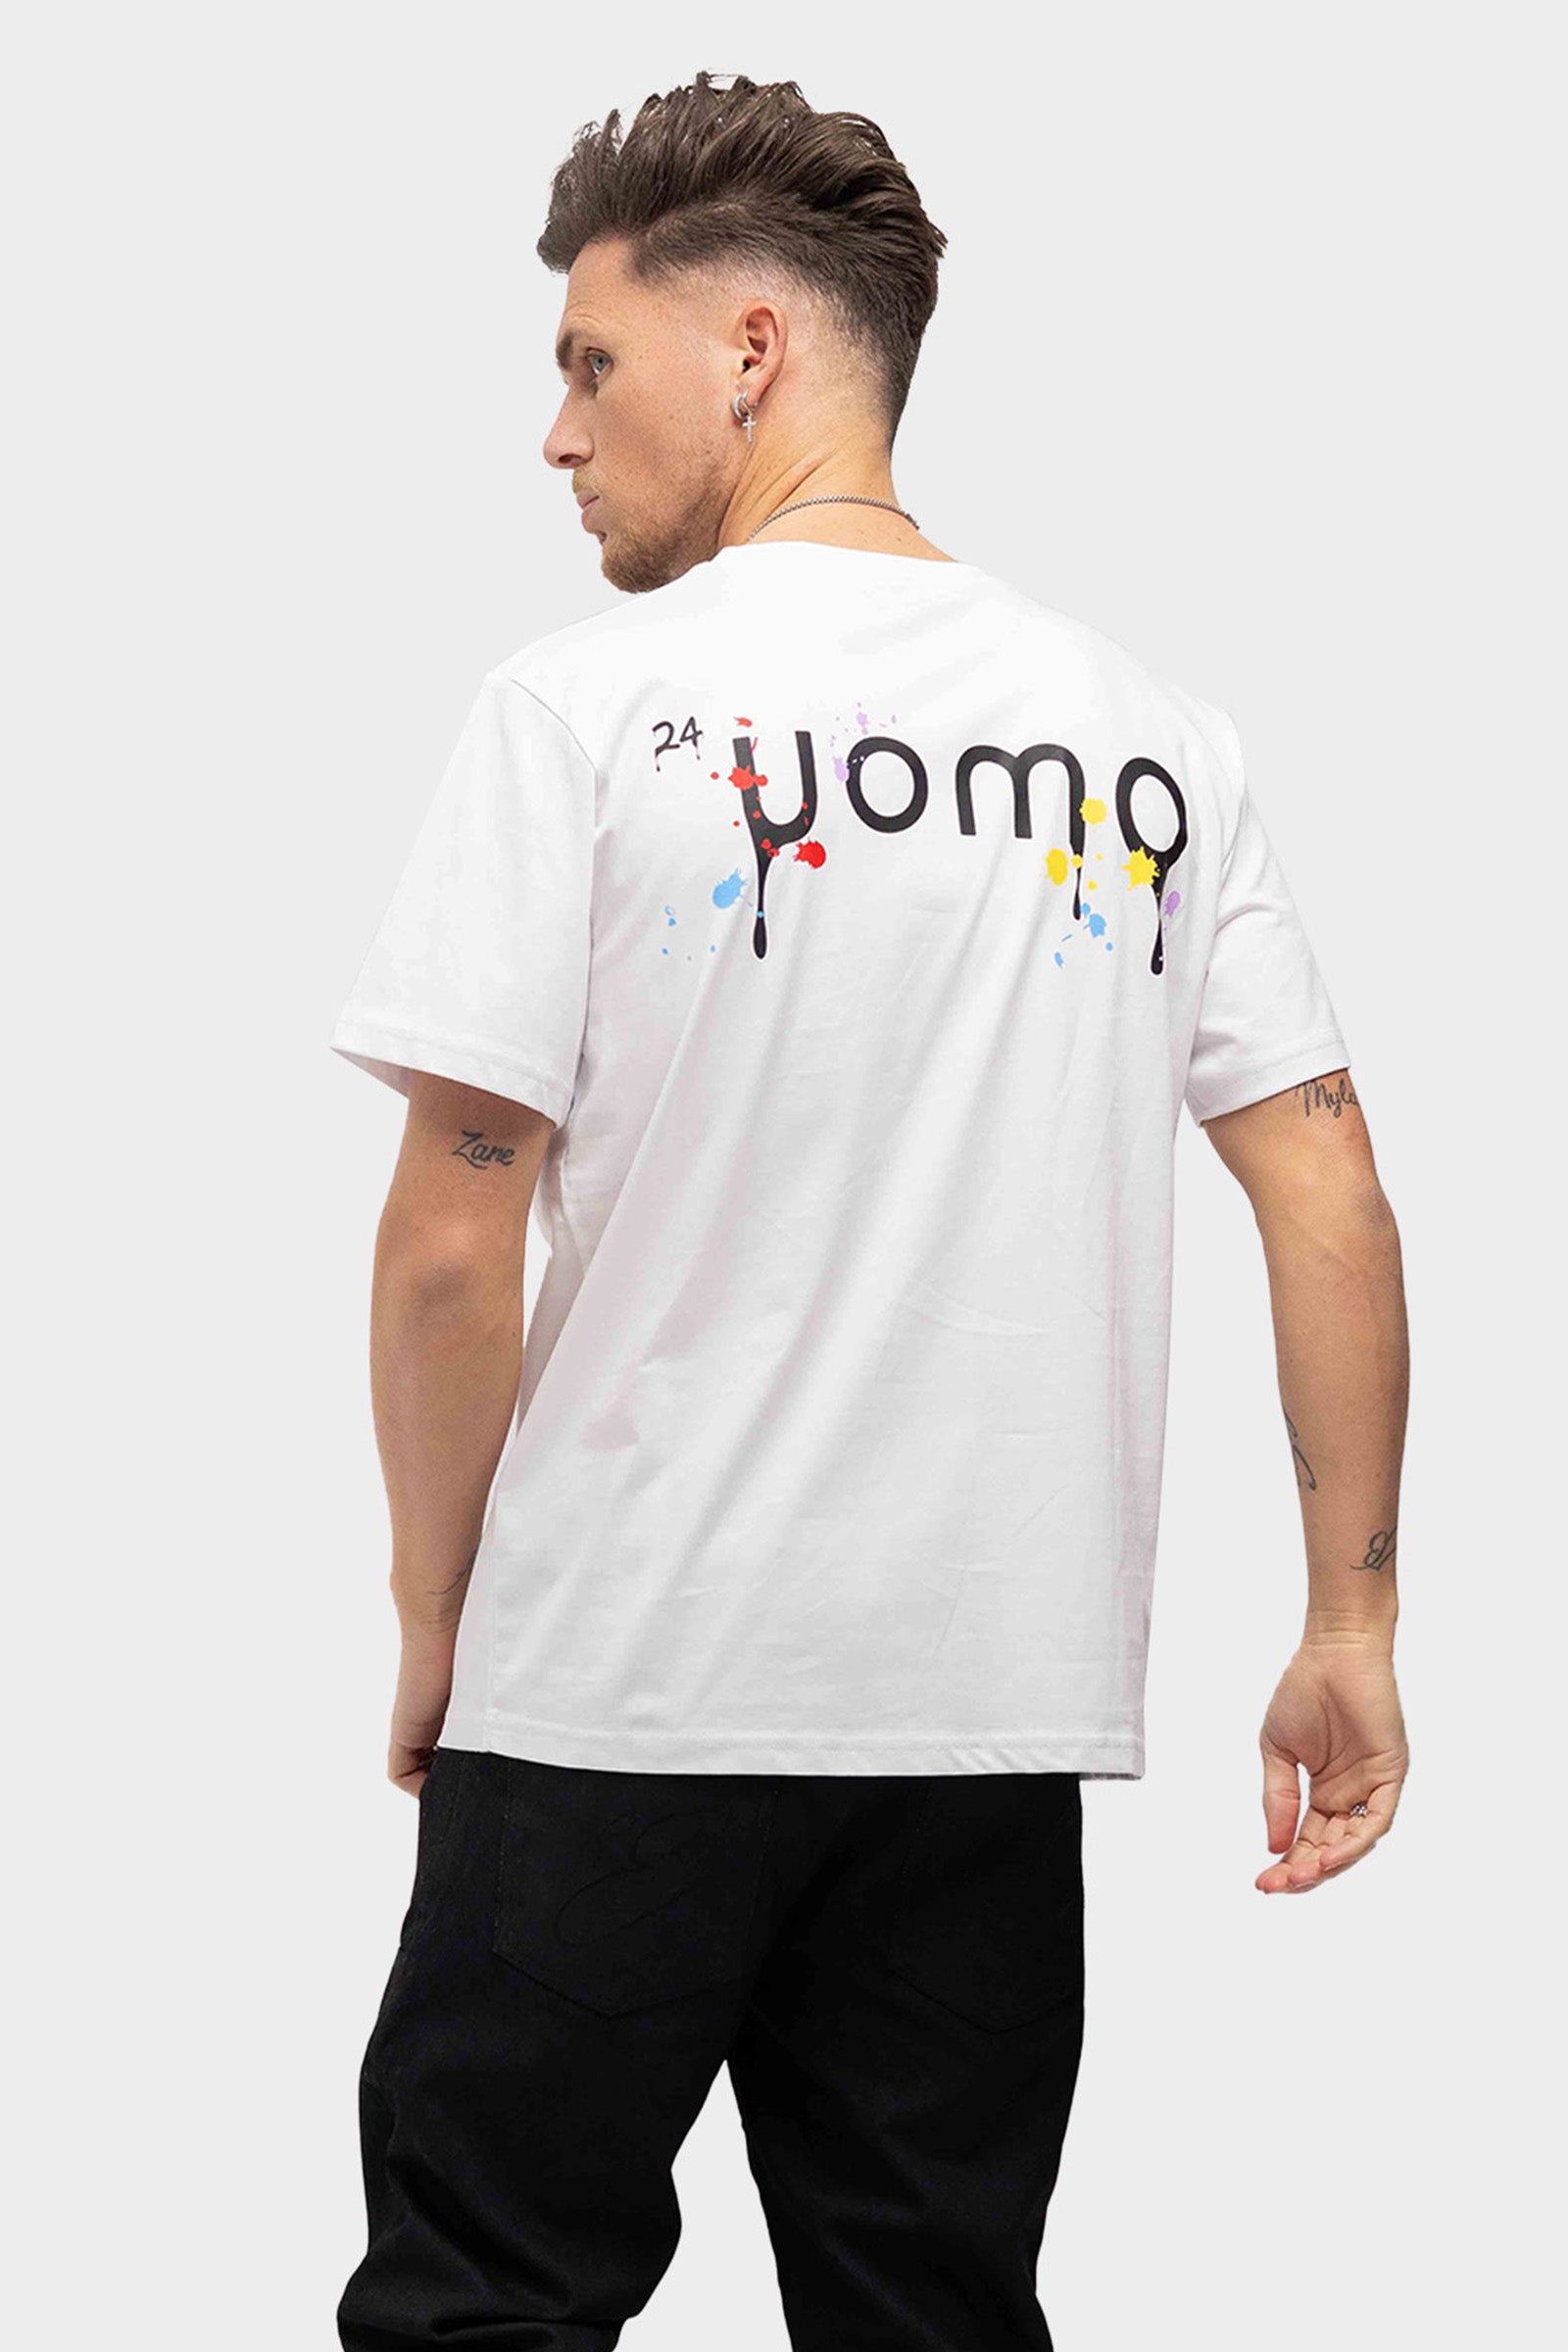 24 Uomo Paint T-shirt Wit PRE-ORDER 5 APRIL